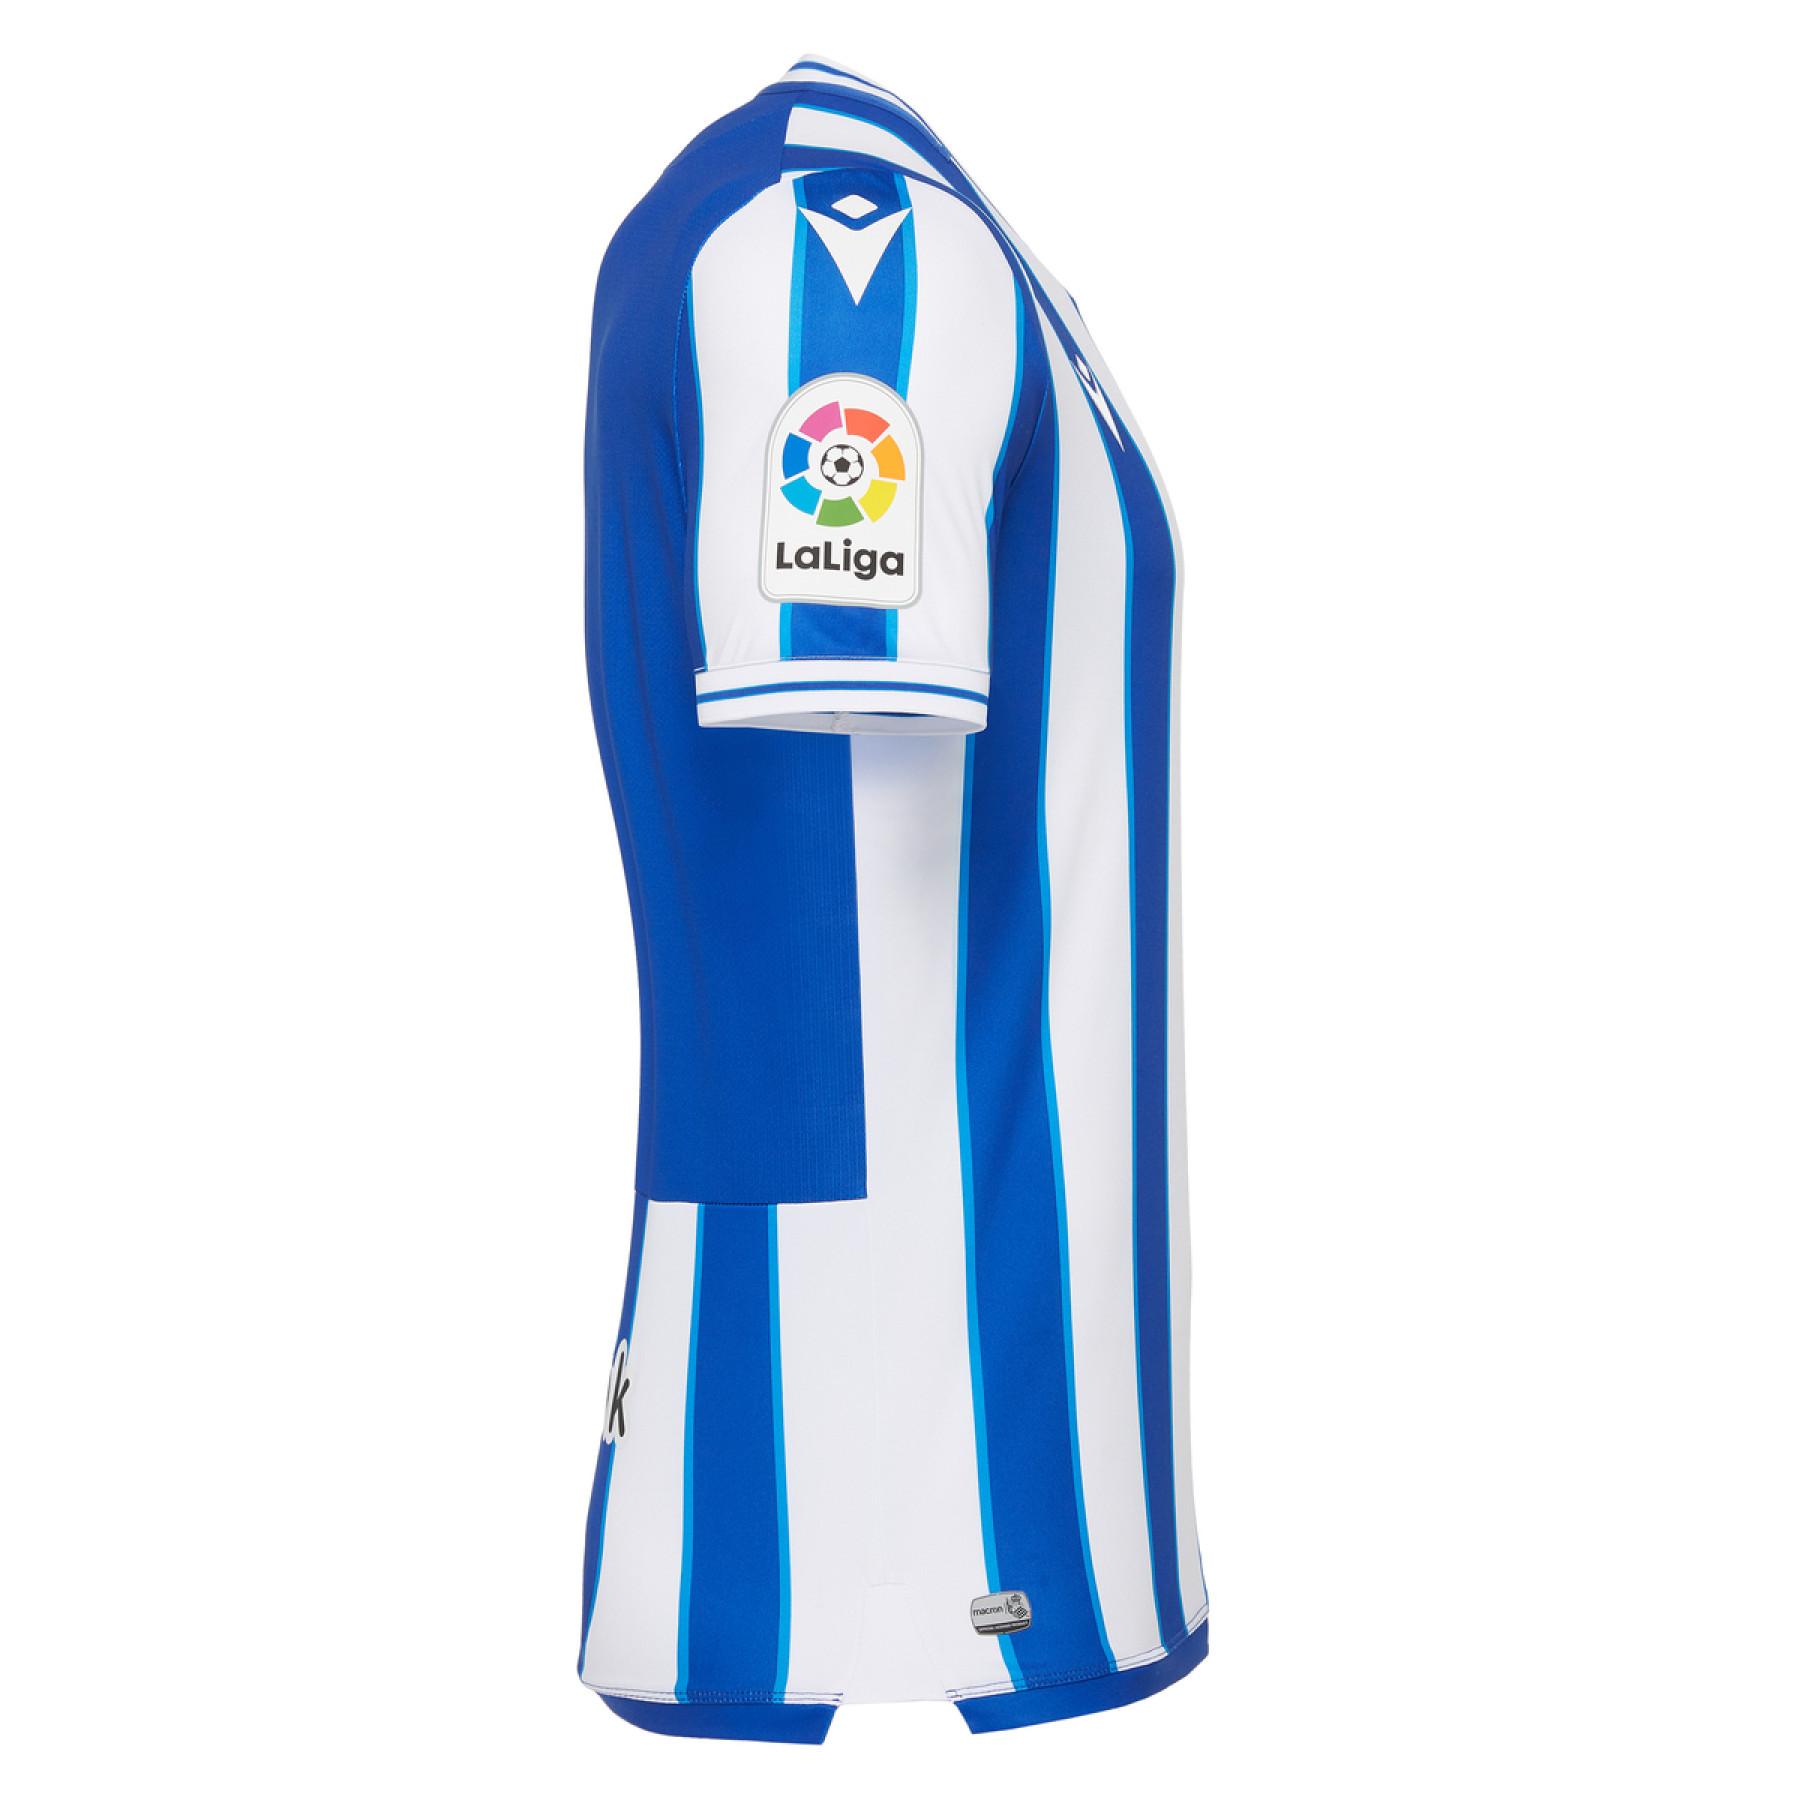 Home jersey Real Sociedad 2020/21